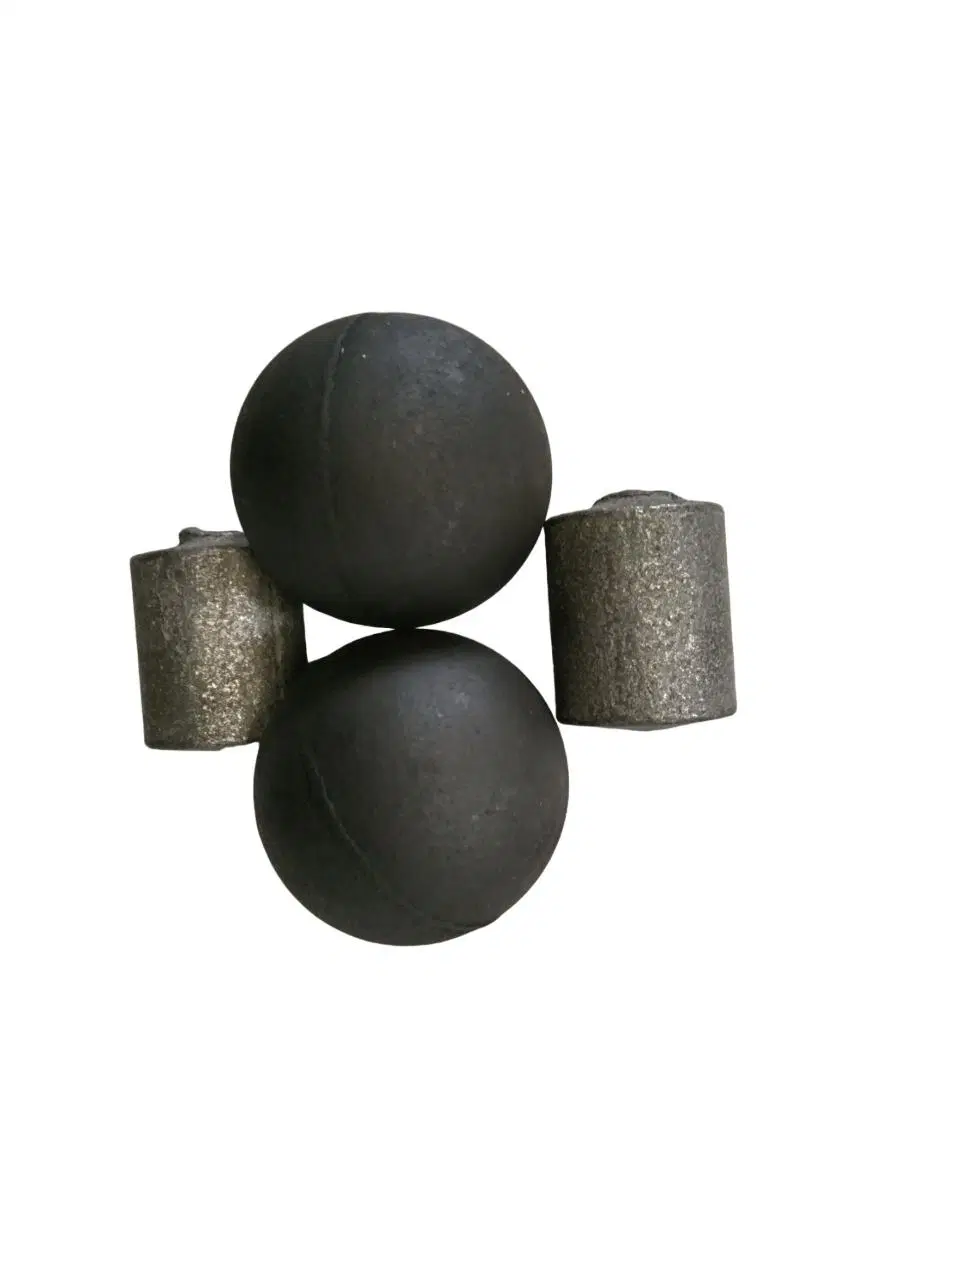 Precio de fábrica fundición Hierro Ore Grinding Media Ball uso in Molino de bolas